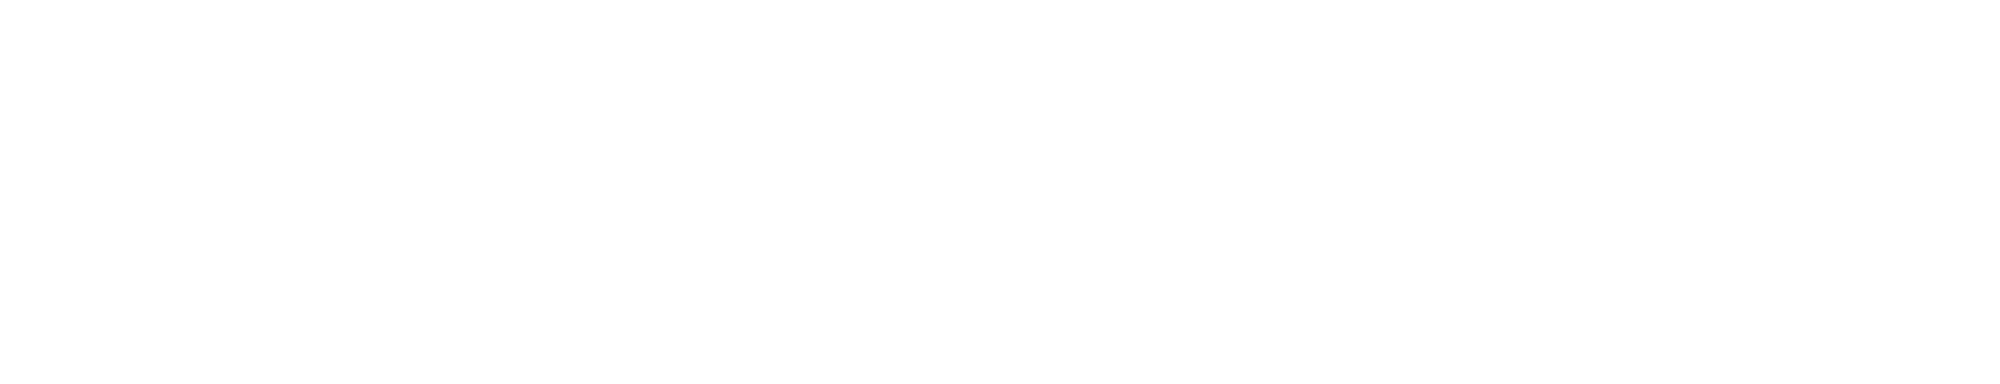 Portland Private Investigator